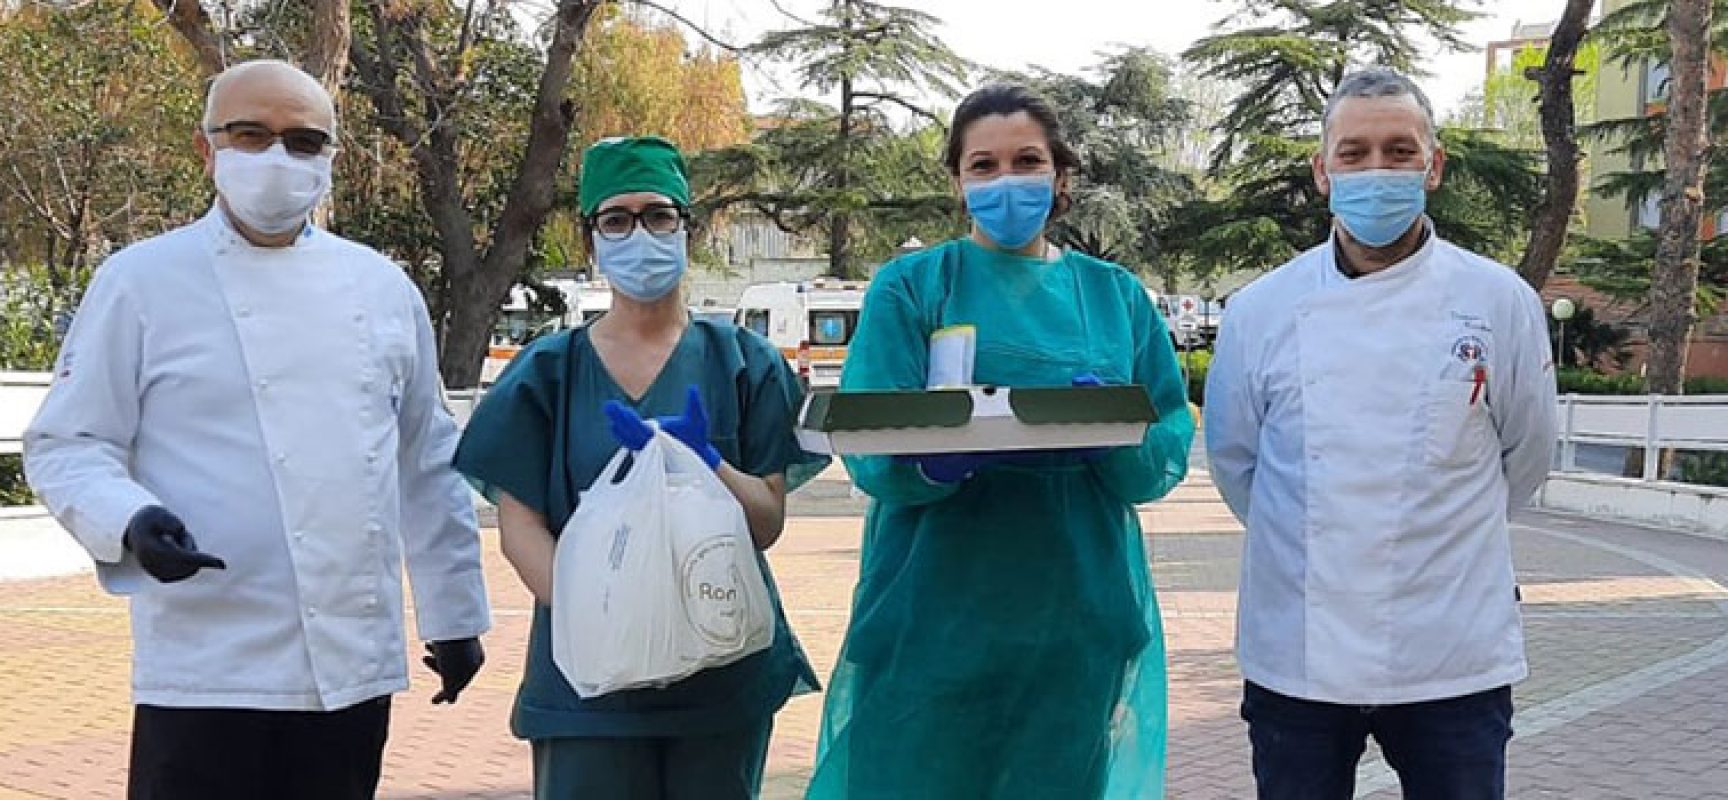 Associazione cuochi e pasticceri Bat offre colazioni a operatori ospedale Bisceglie / FOTO